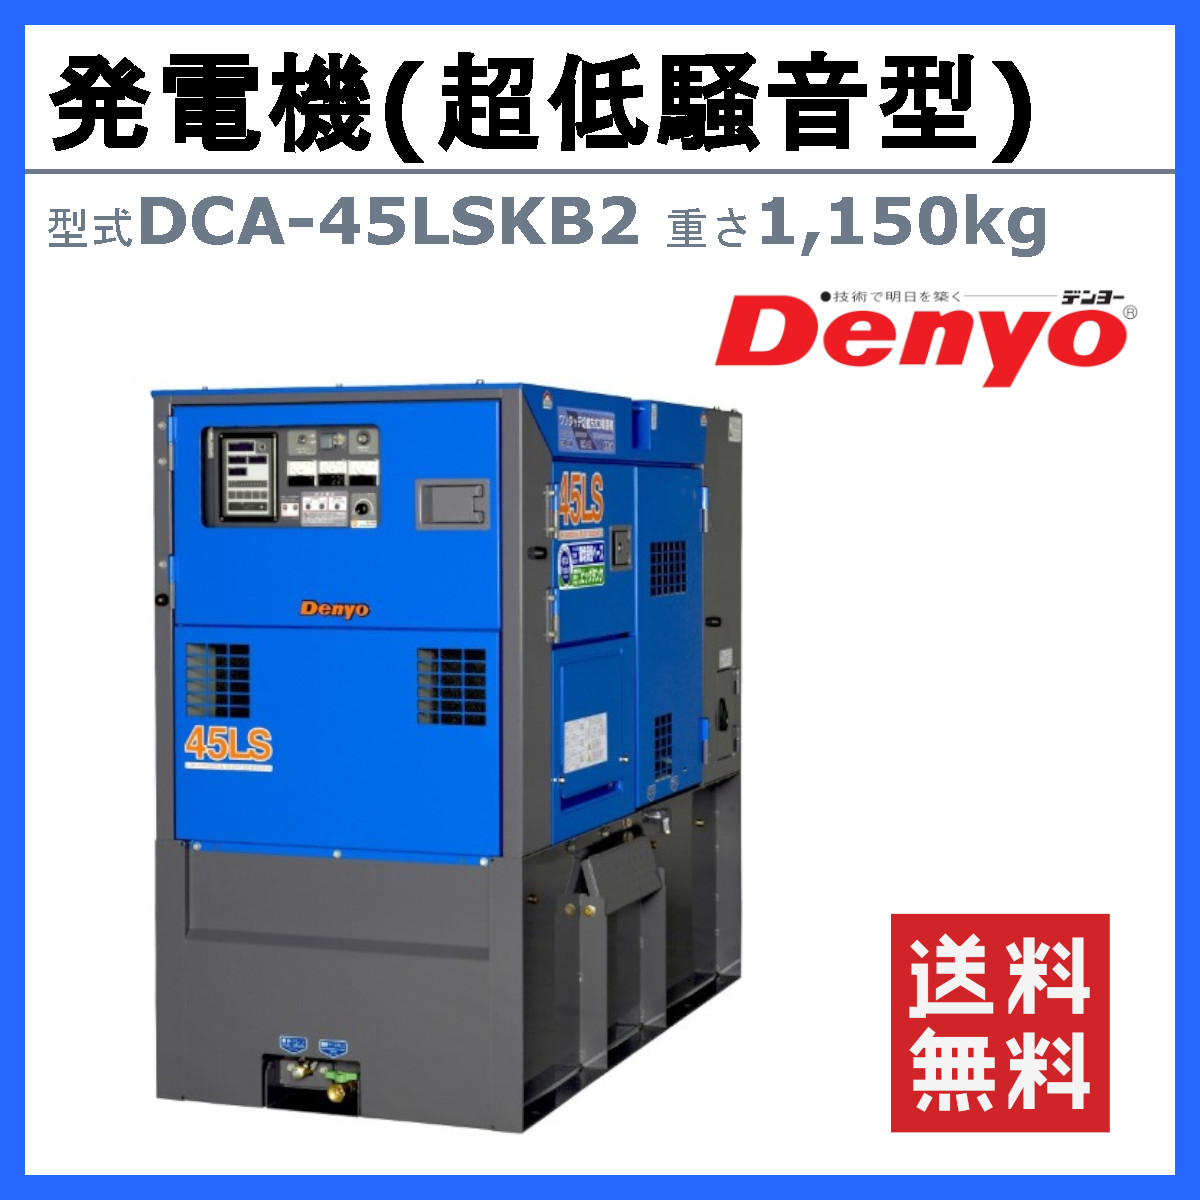 デンヨー 発電機 DCA-45LSKB2 50Hz 60Hz 単相 三相 切替 ディーゼル